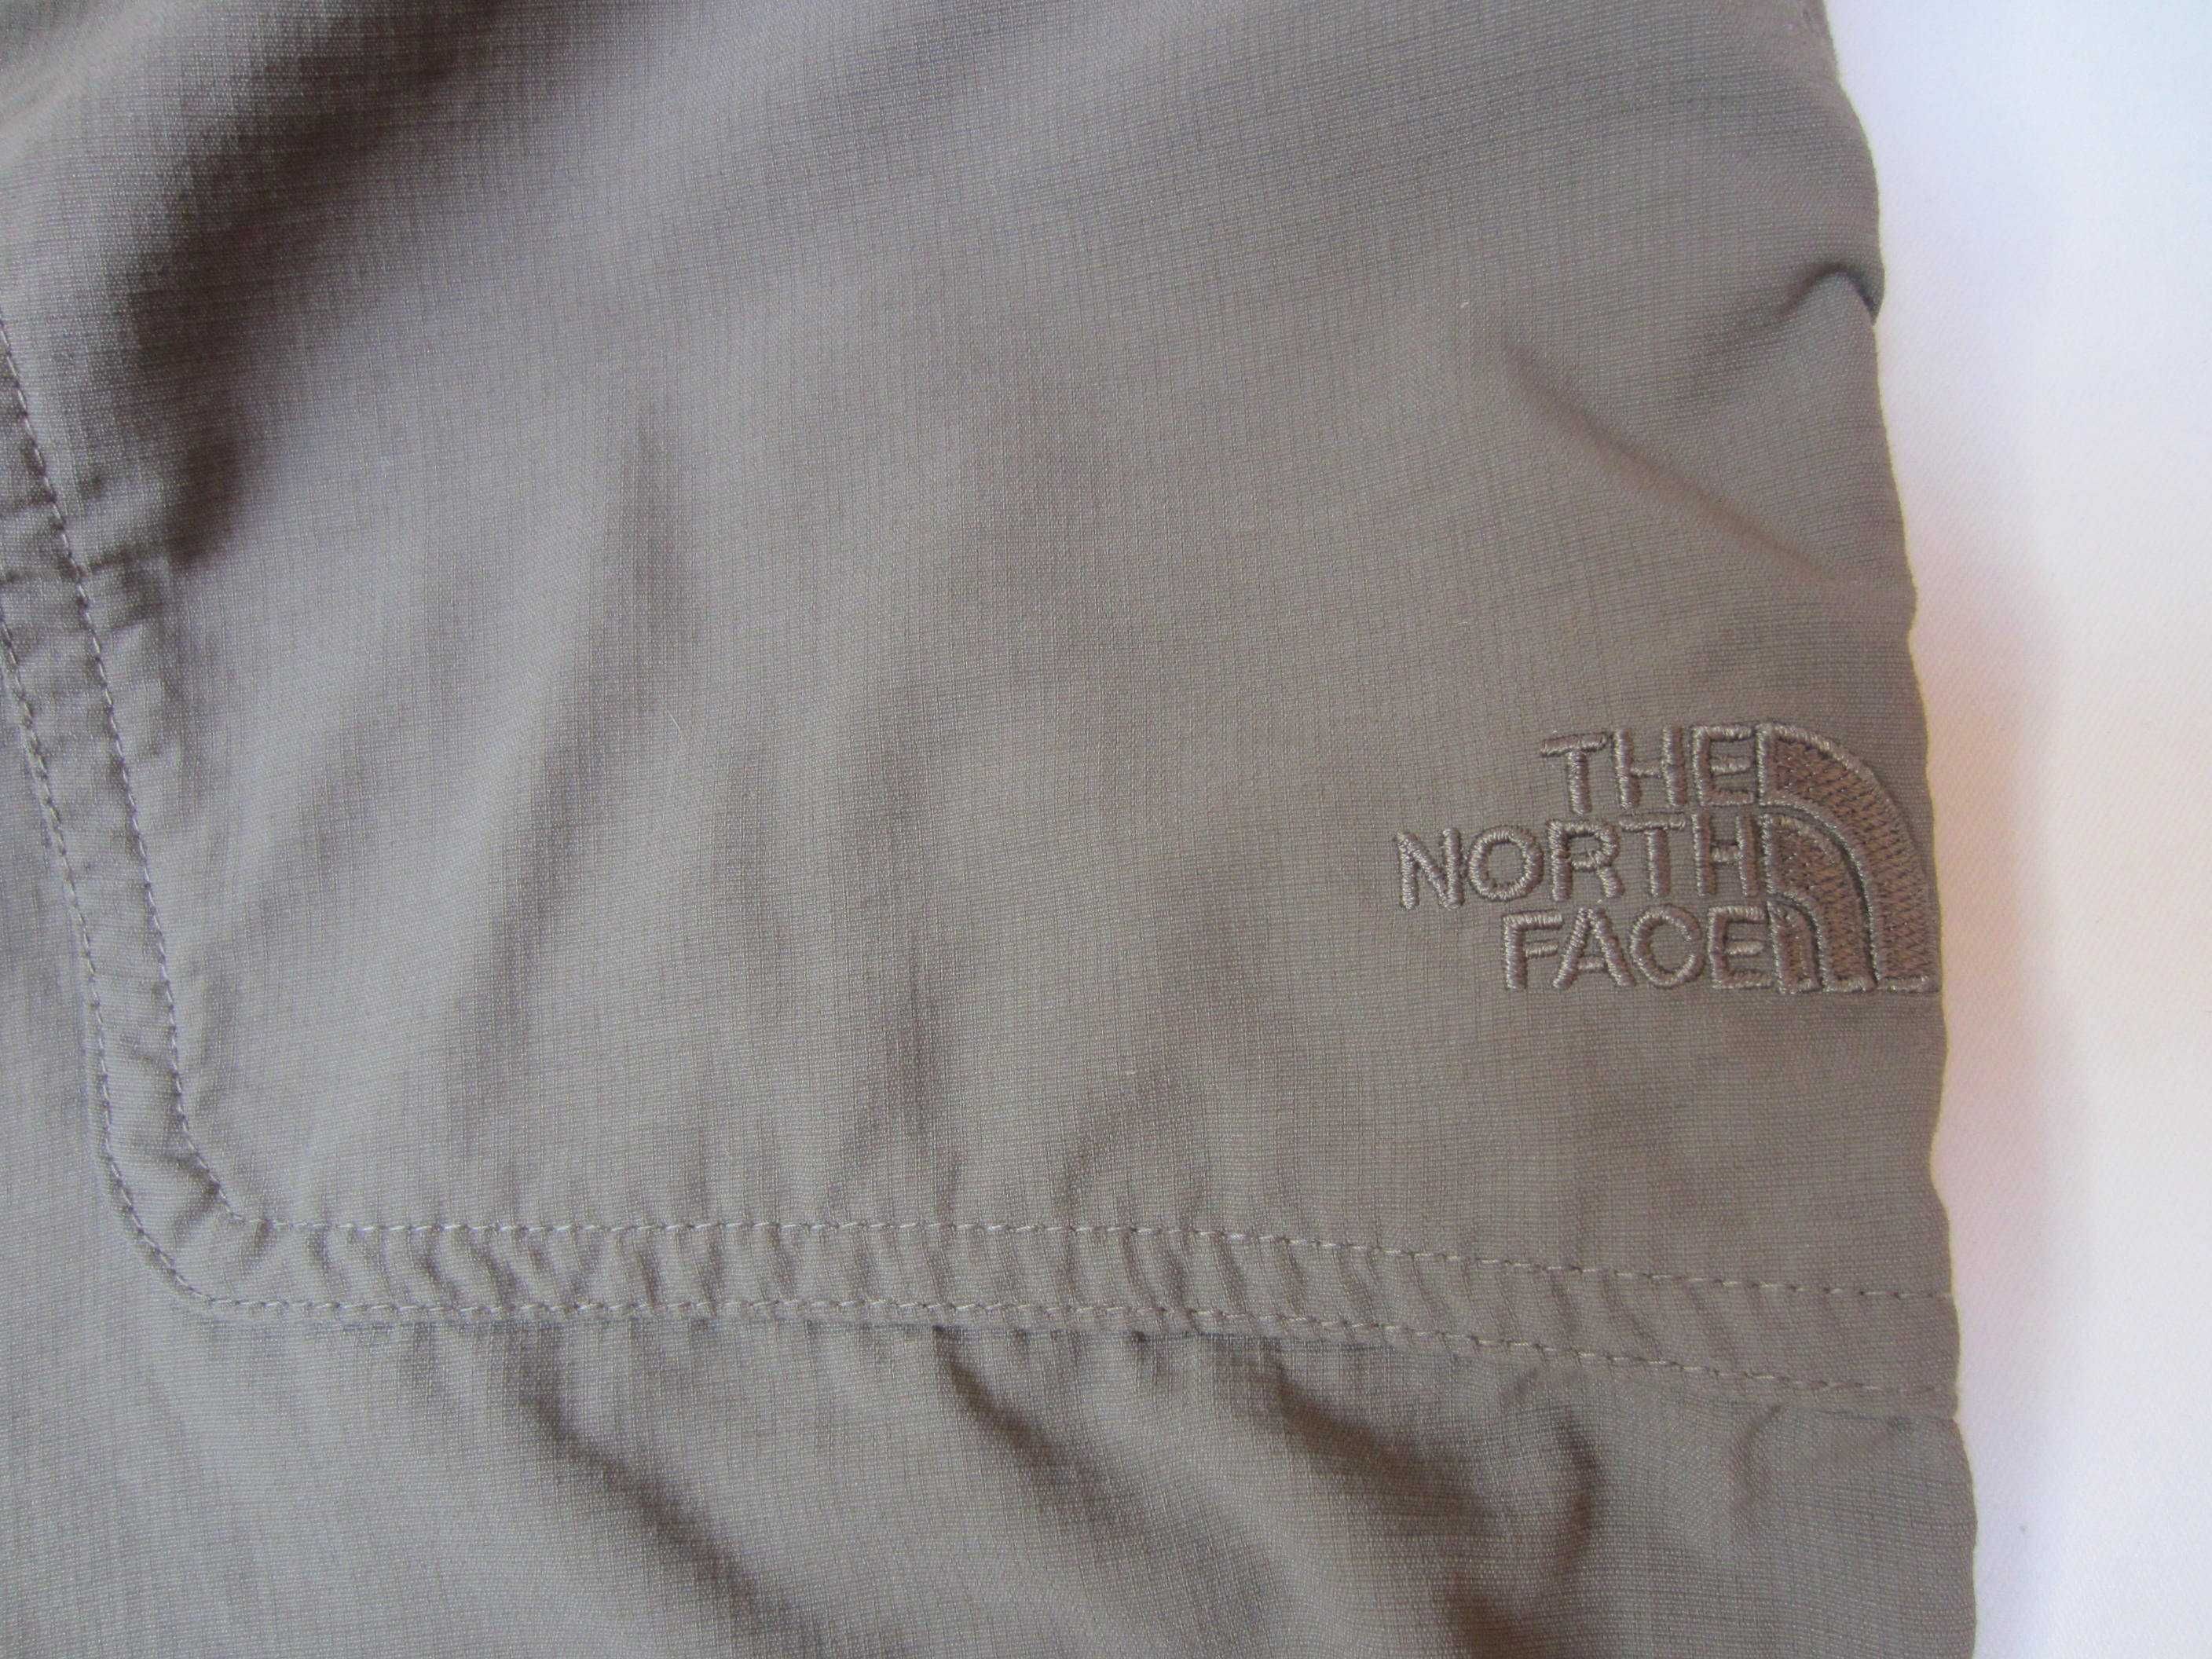 Pantalon dama The North Face,masura 4, kaki, fermoar, stare f.buna